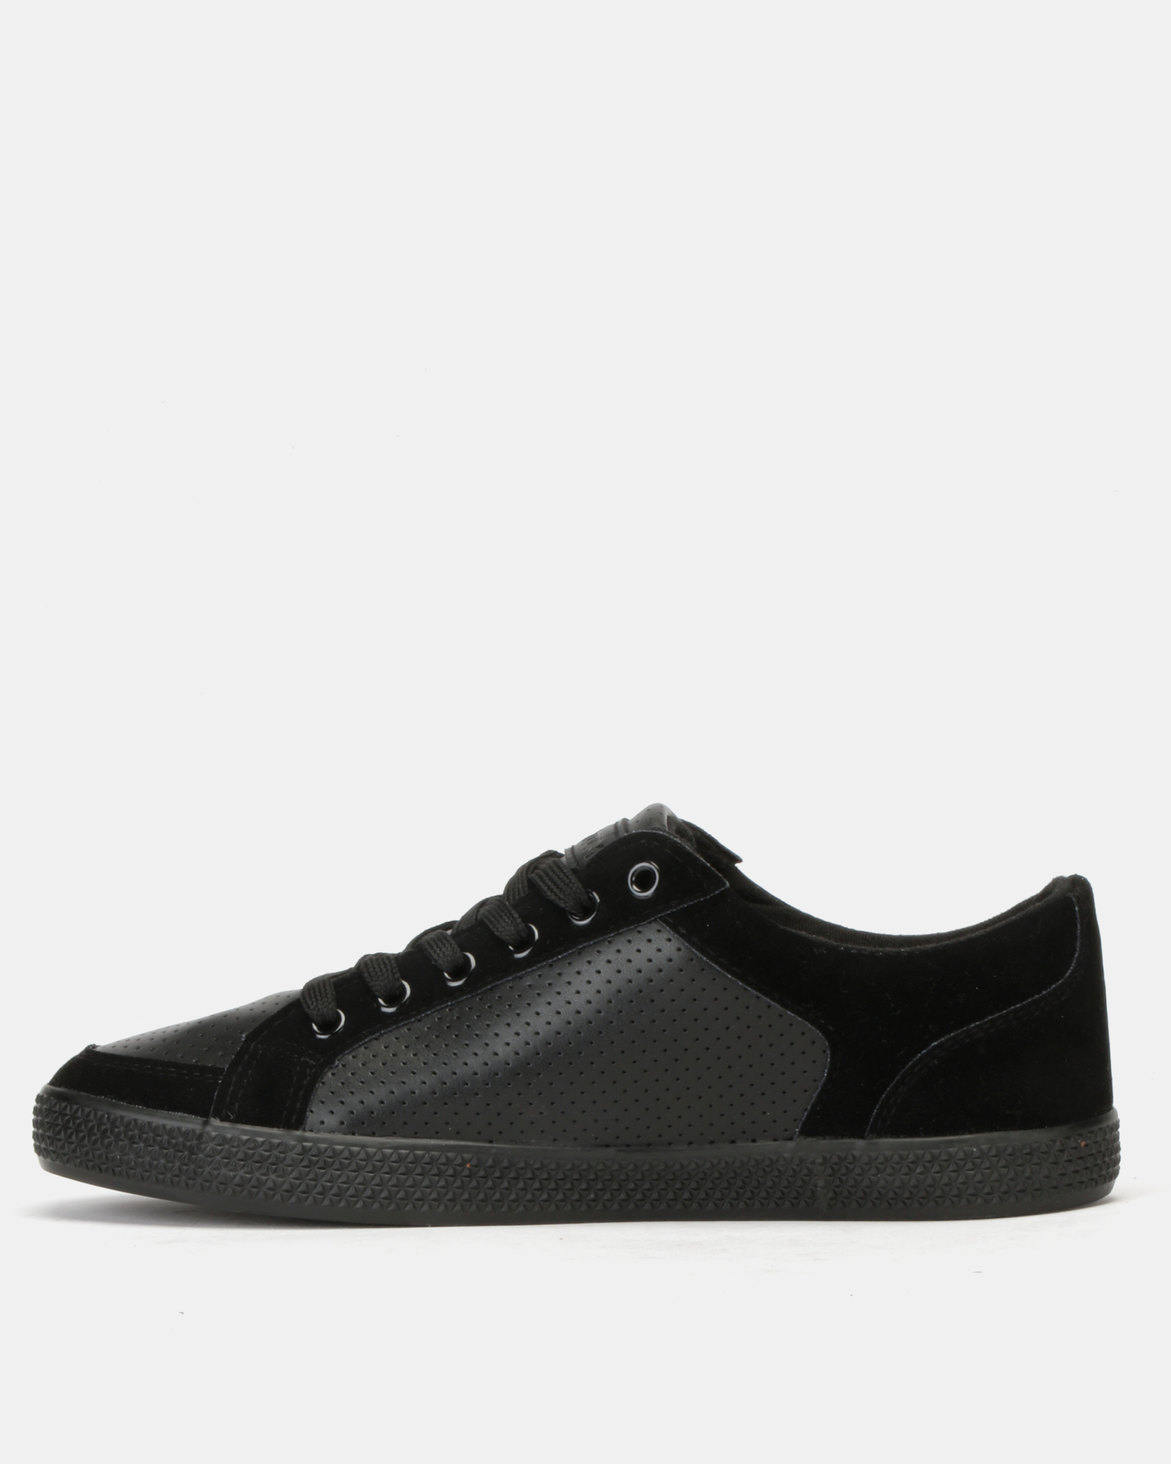 TOMTOM Source Sneakers Black | Zando